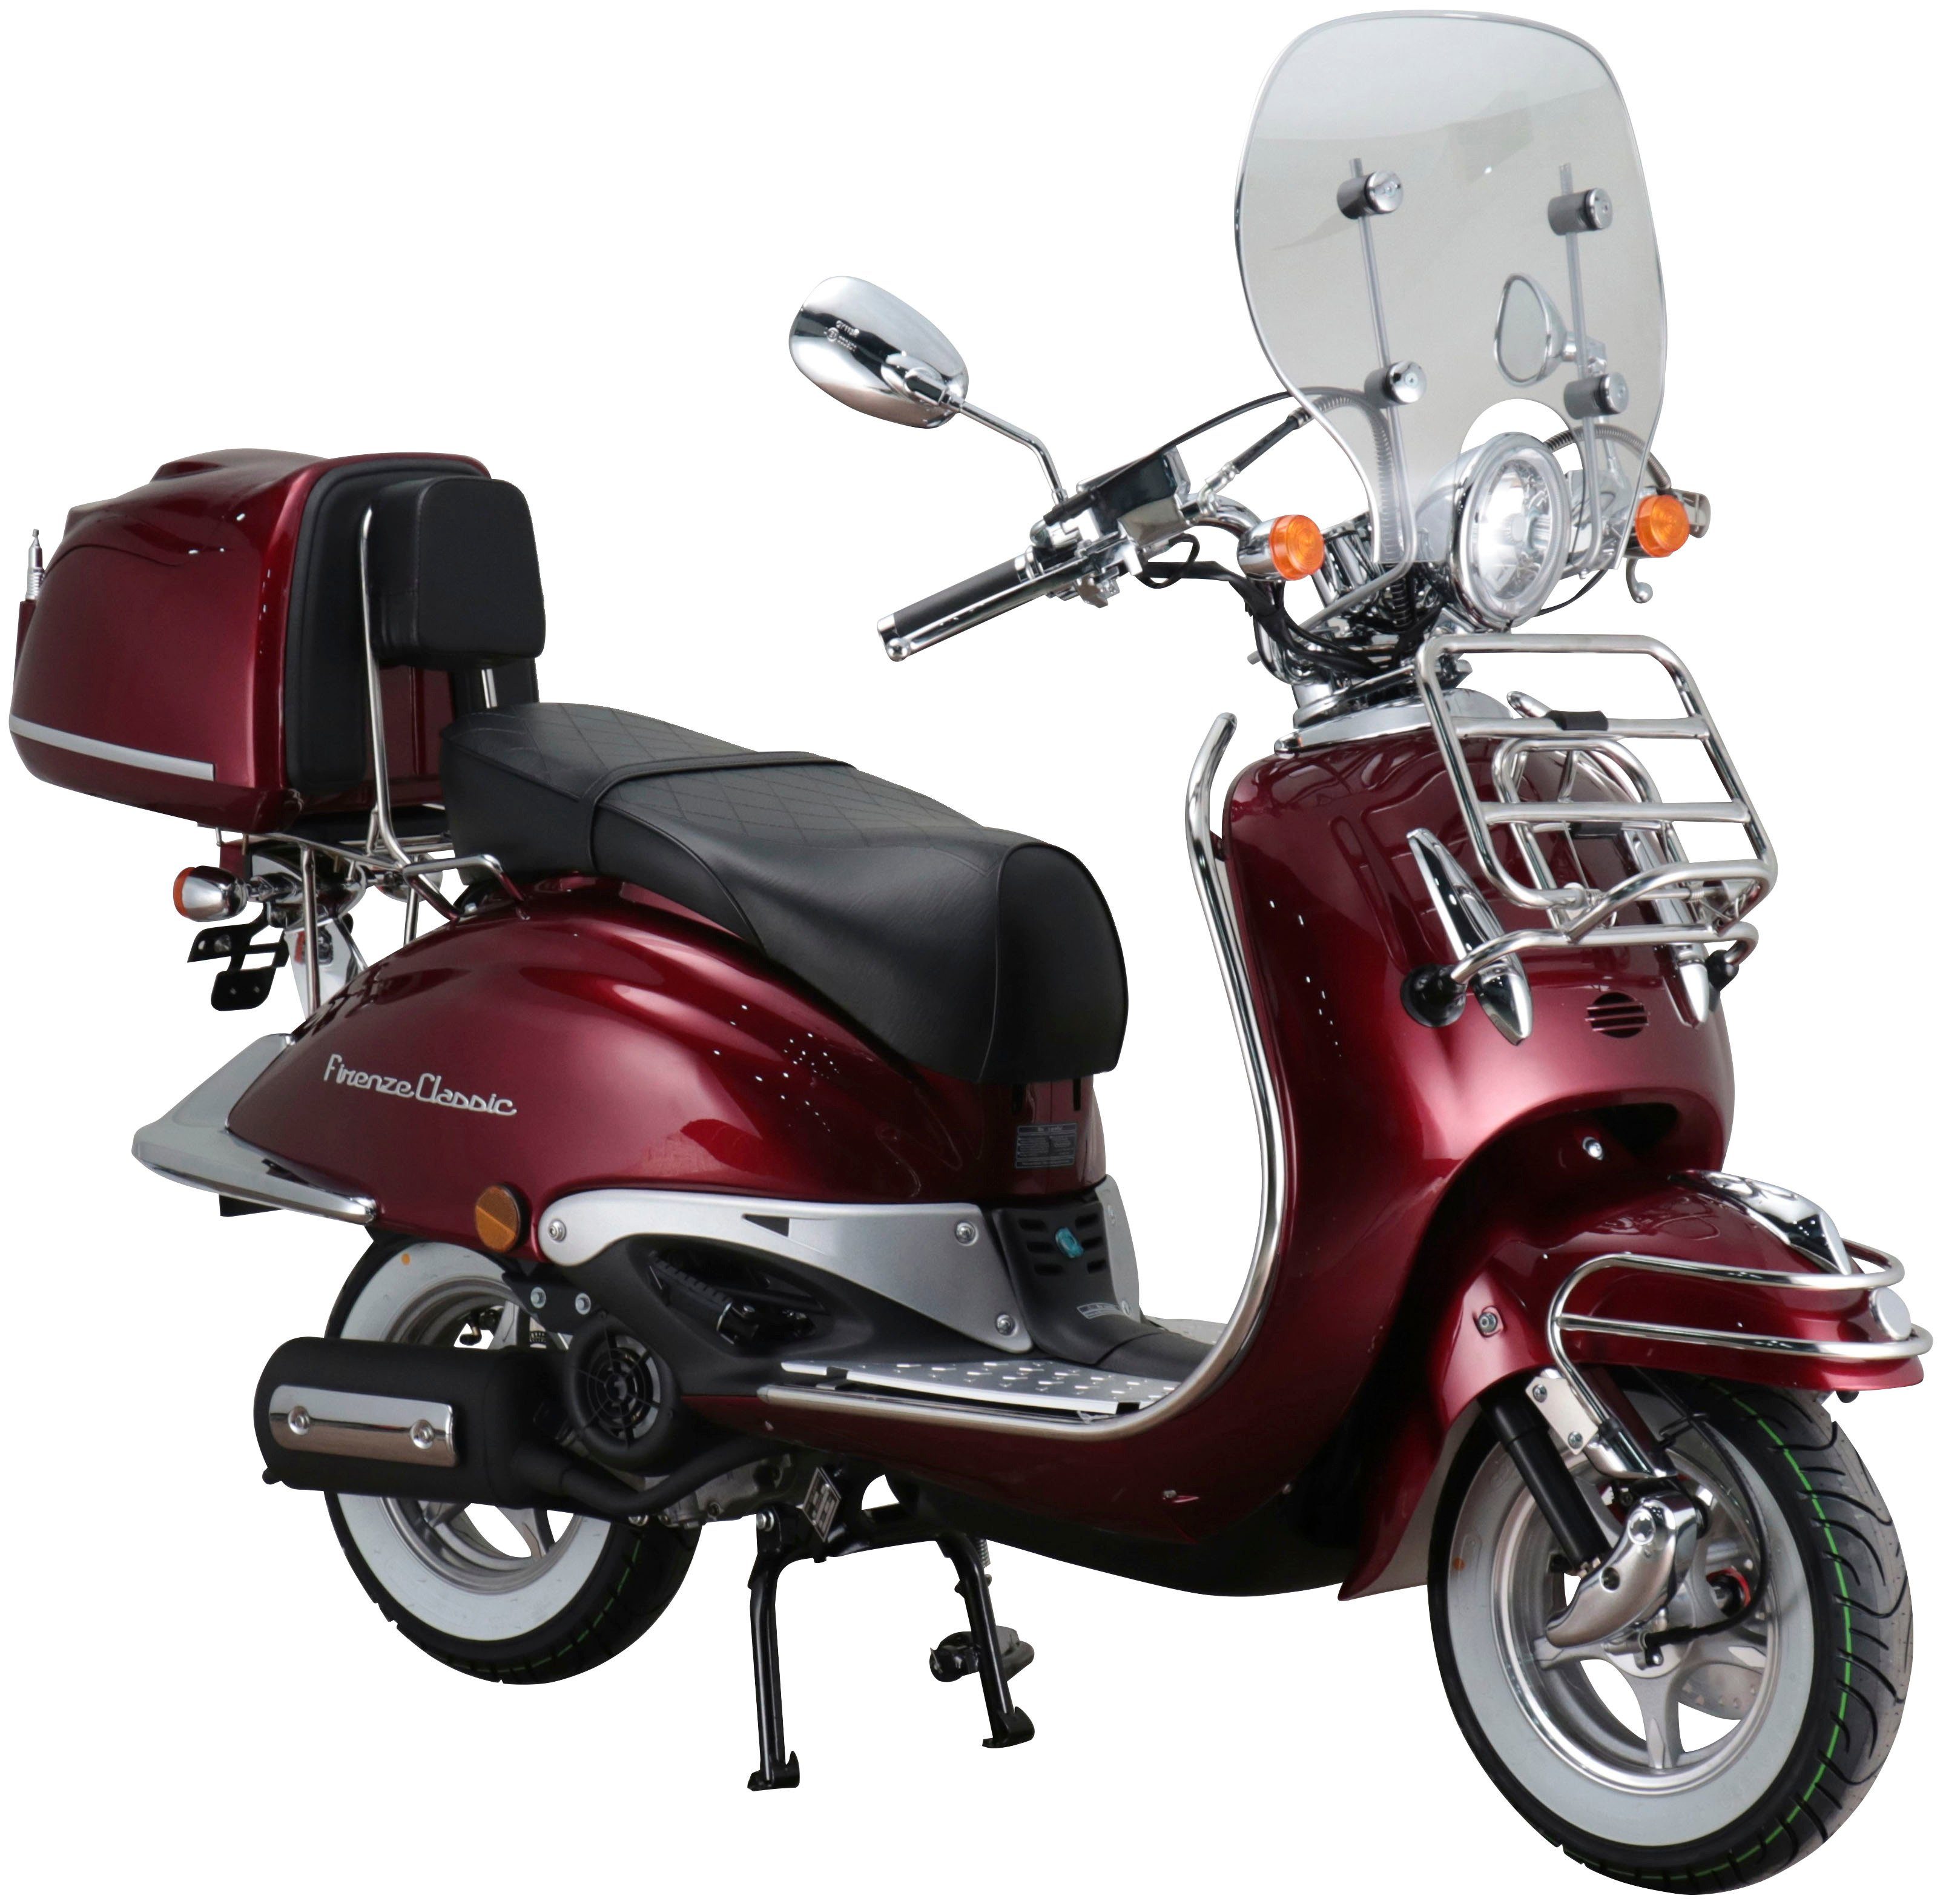 Motorroller weinrot Firenze Motors Euro 5, 125 (Komplett-Set) ccm, 85 Classic, Retro Alpha km/h,